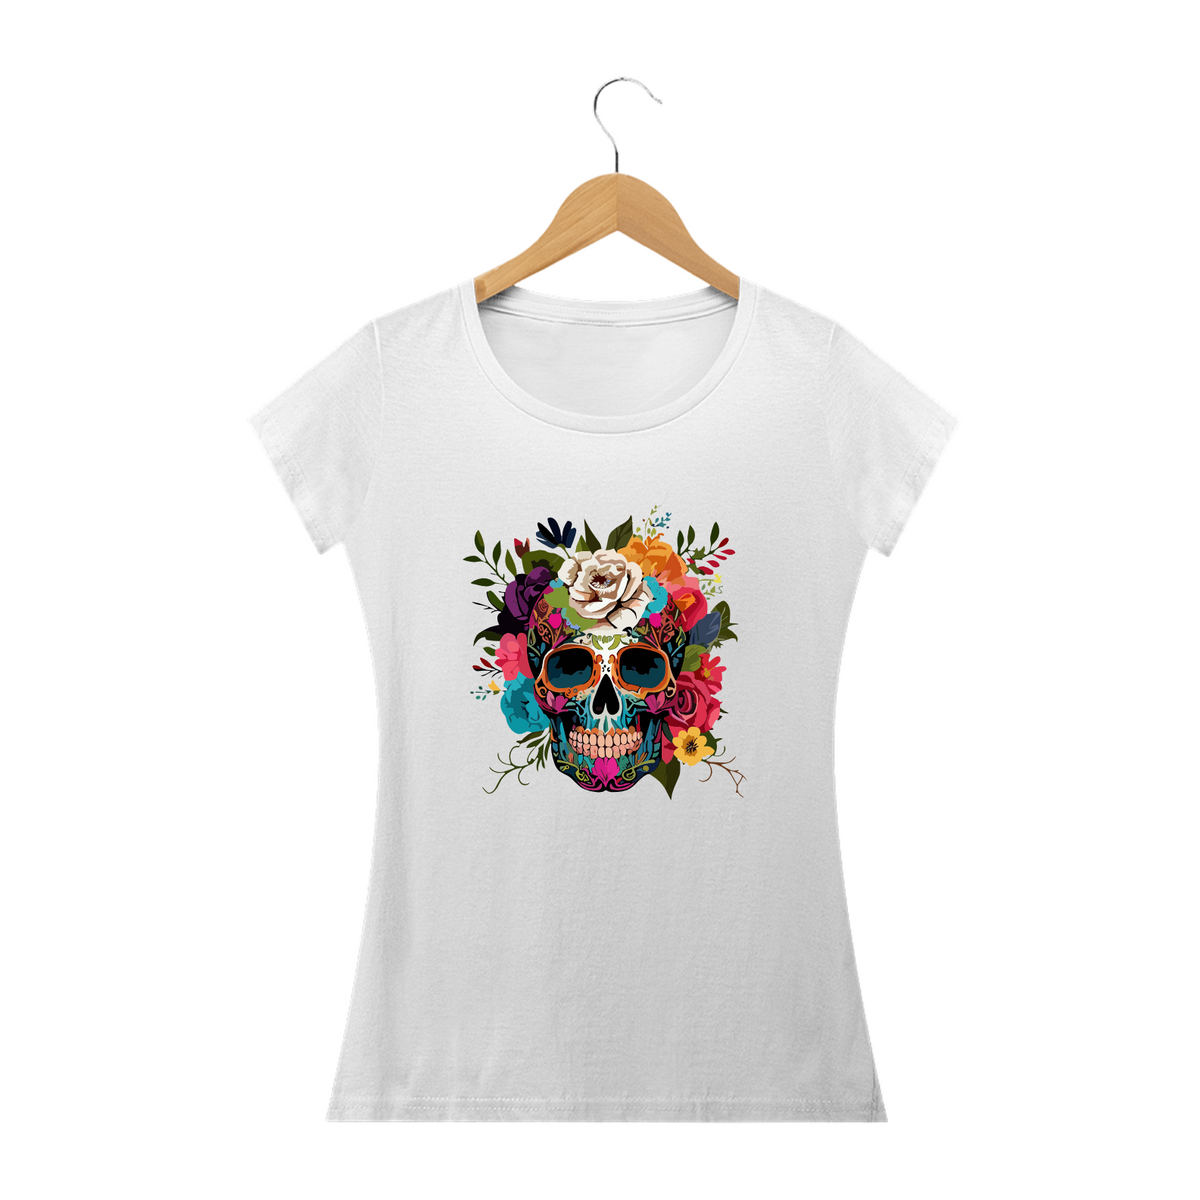 Nome do produto: CAVEIRA MEXICANA ÓCULOS E FLORES- Camiseta Personalizada com Estampa de Caveira